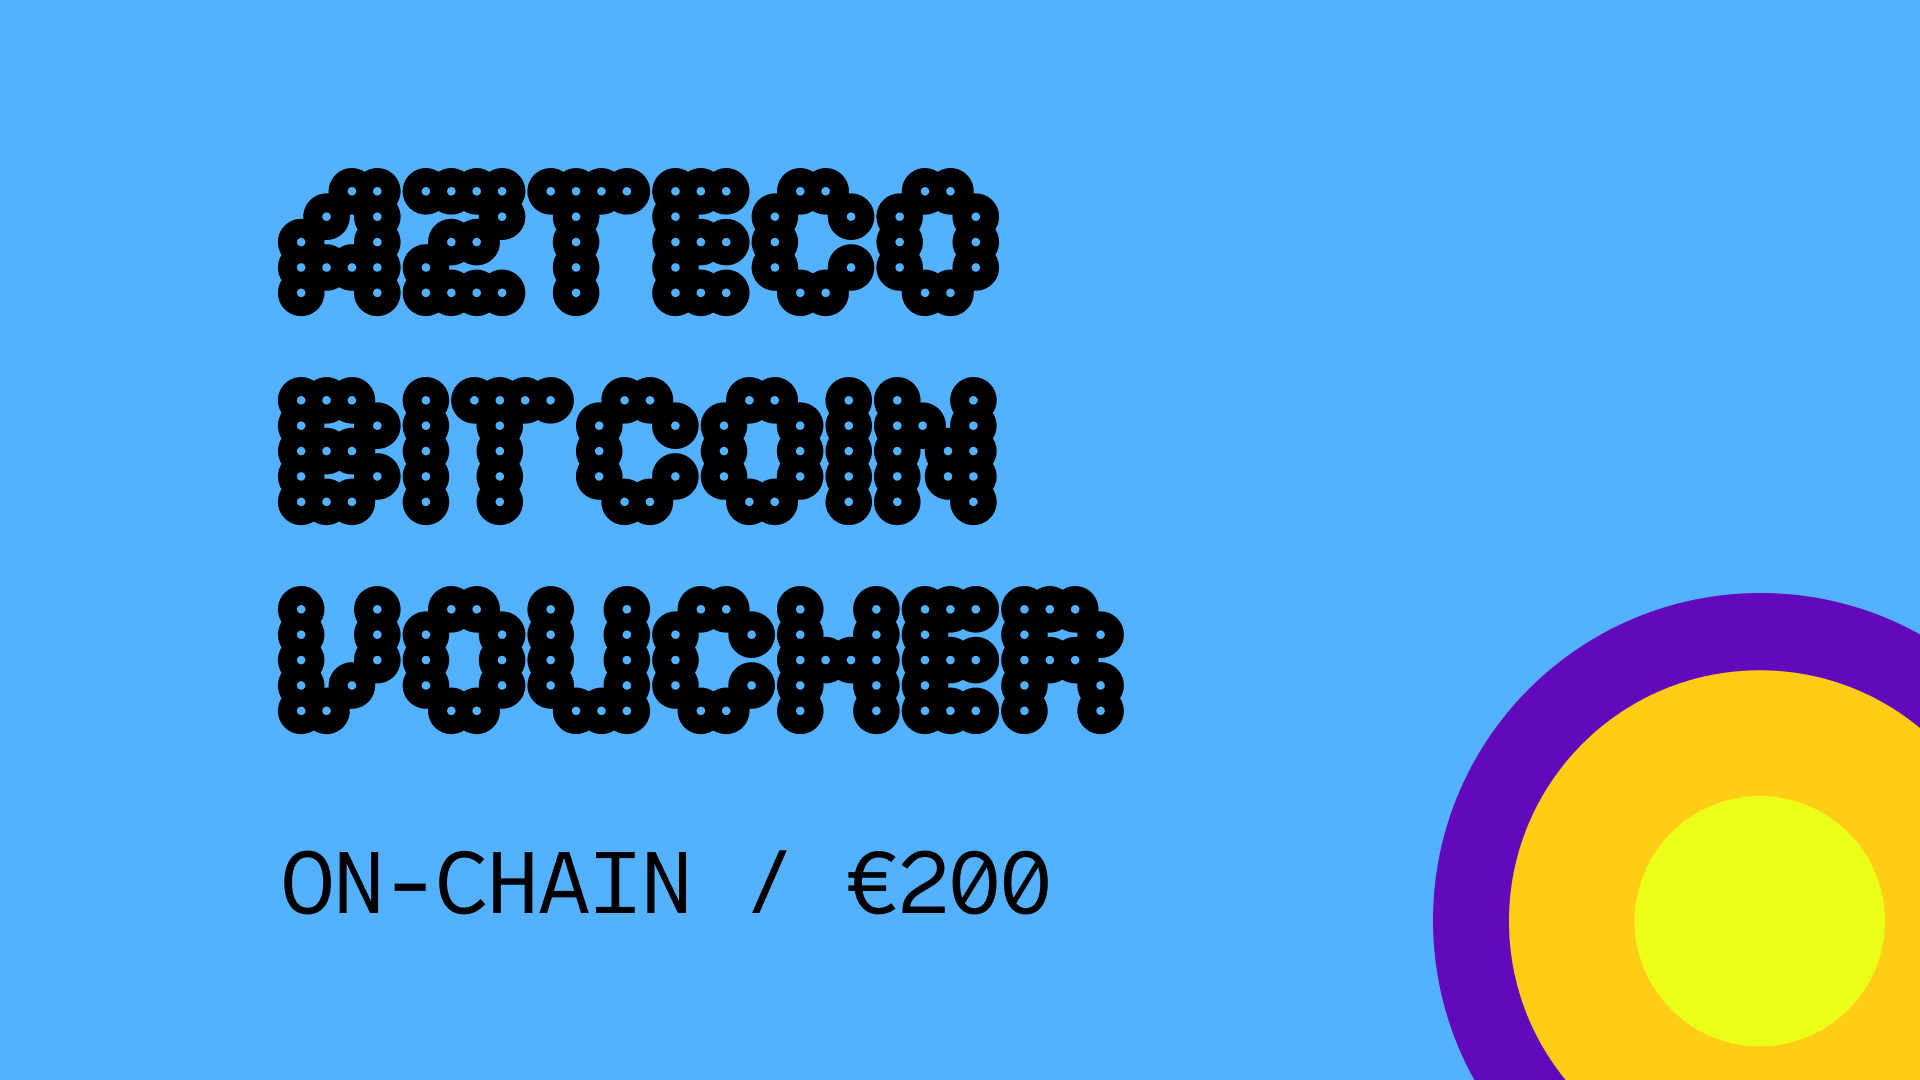 [$ 225.98] Azteco Bitcoin On-Chain €200 Voucher